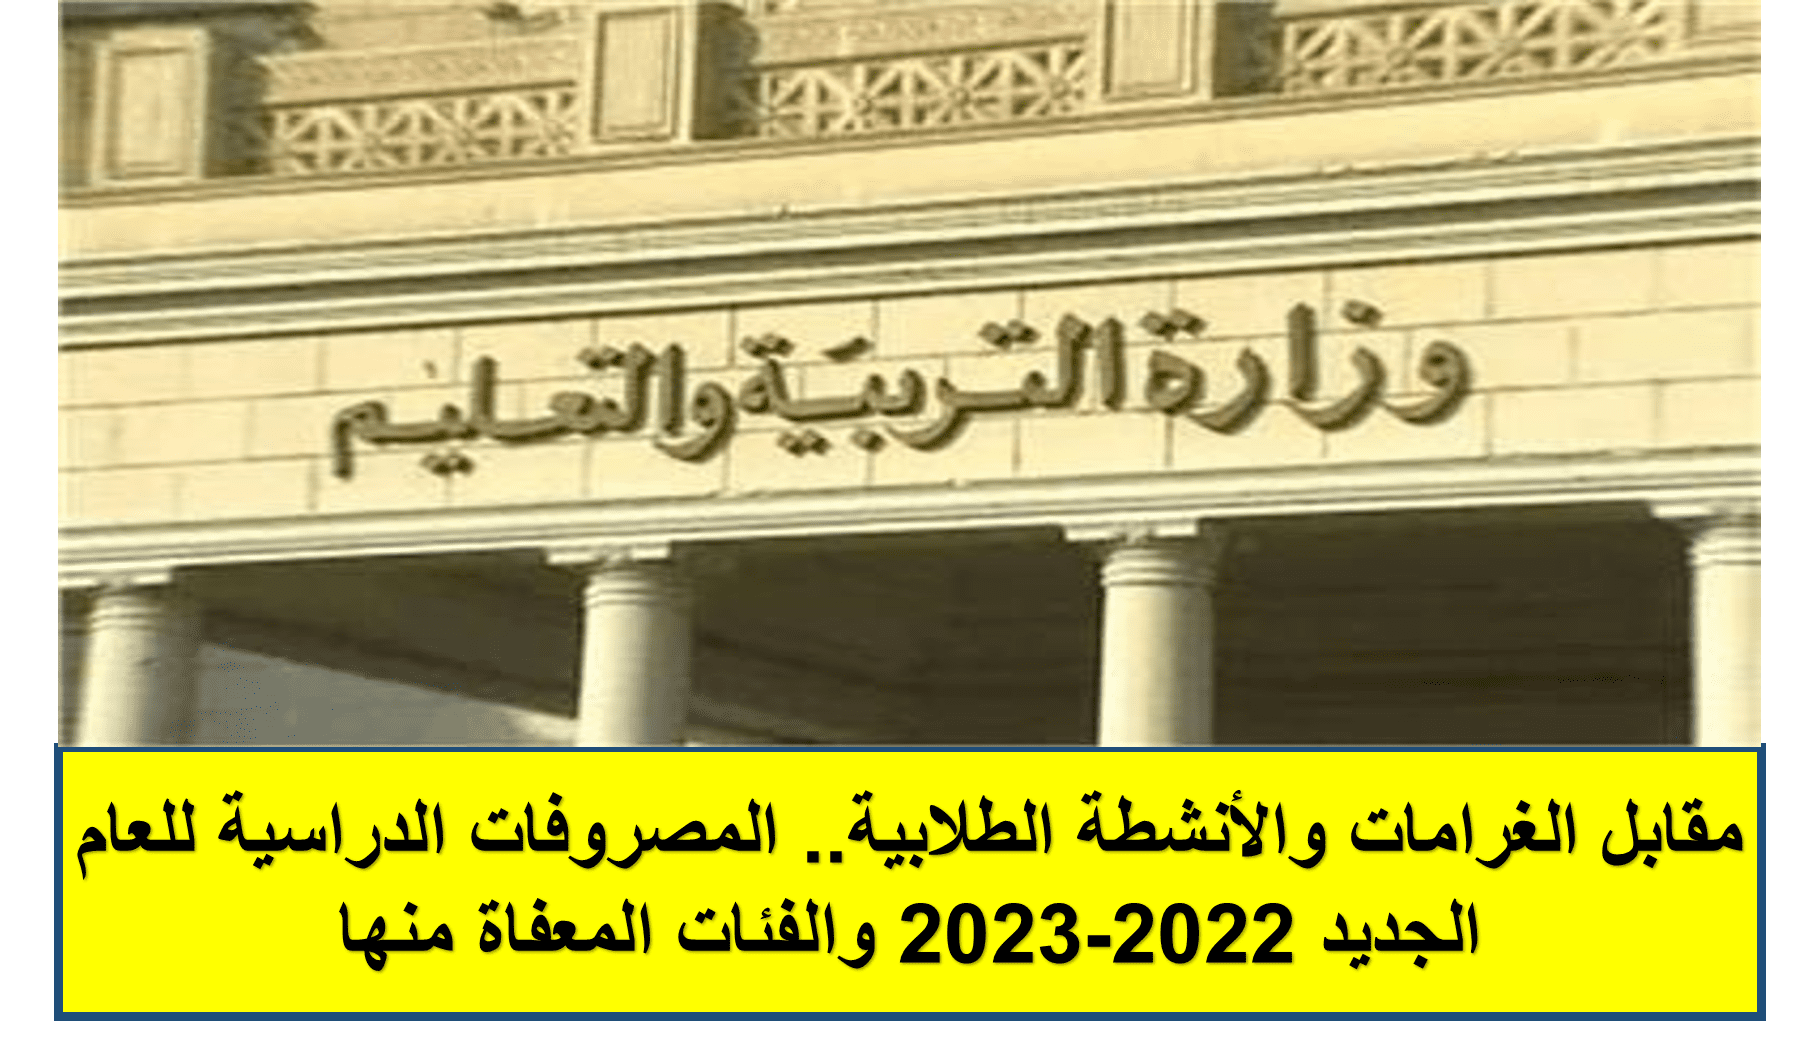 المصروفات الدراسية للعام الجديد 2022-2023 والفئات المعفاة منها